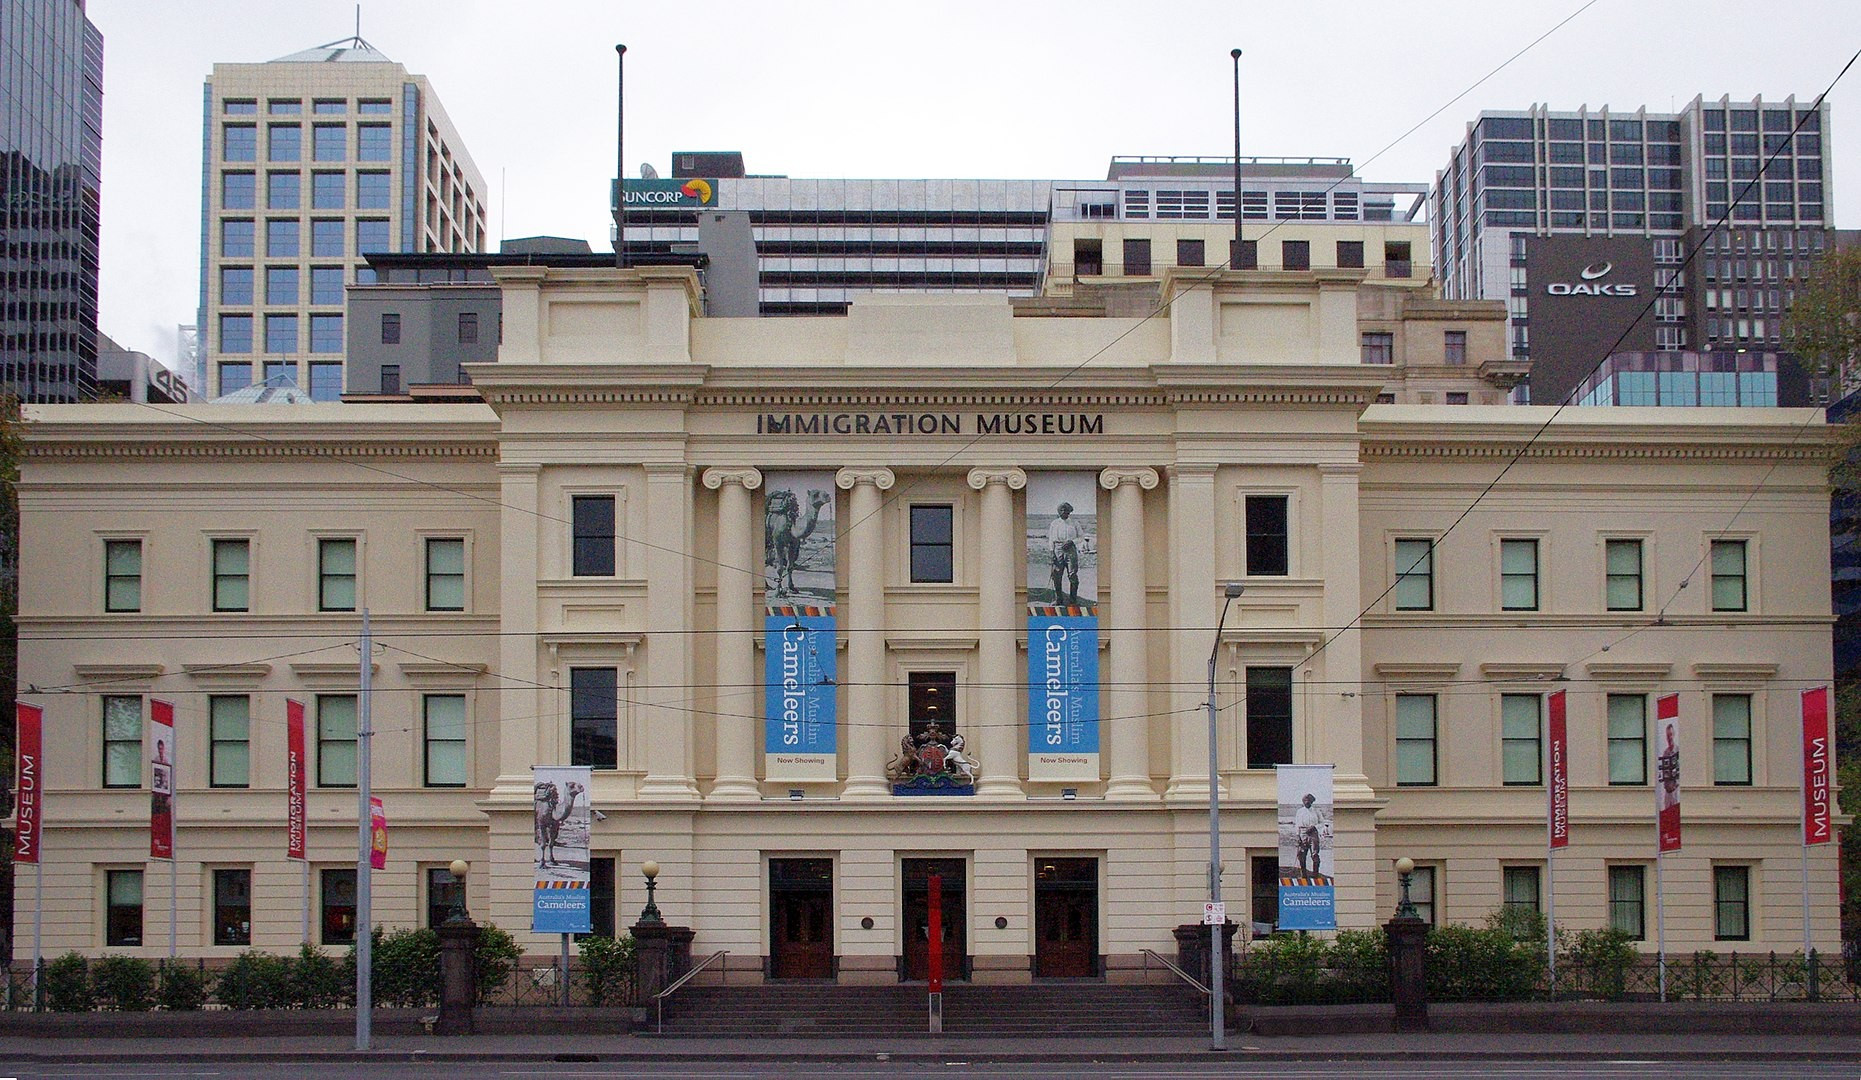 Immigration Museum, Australia